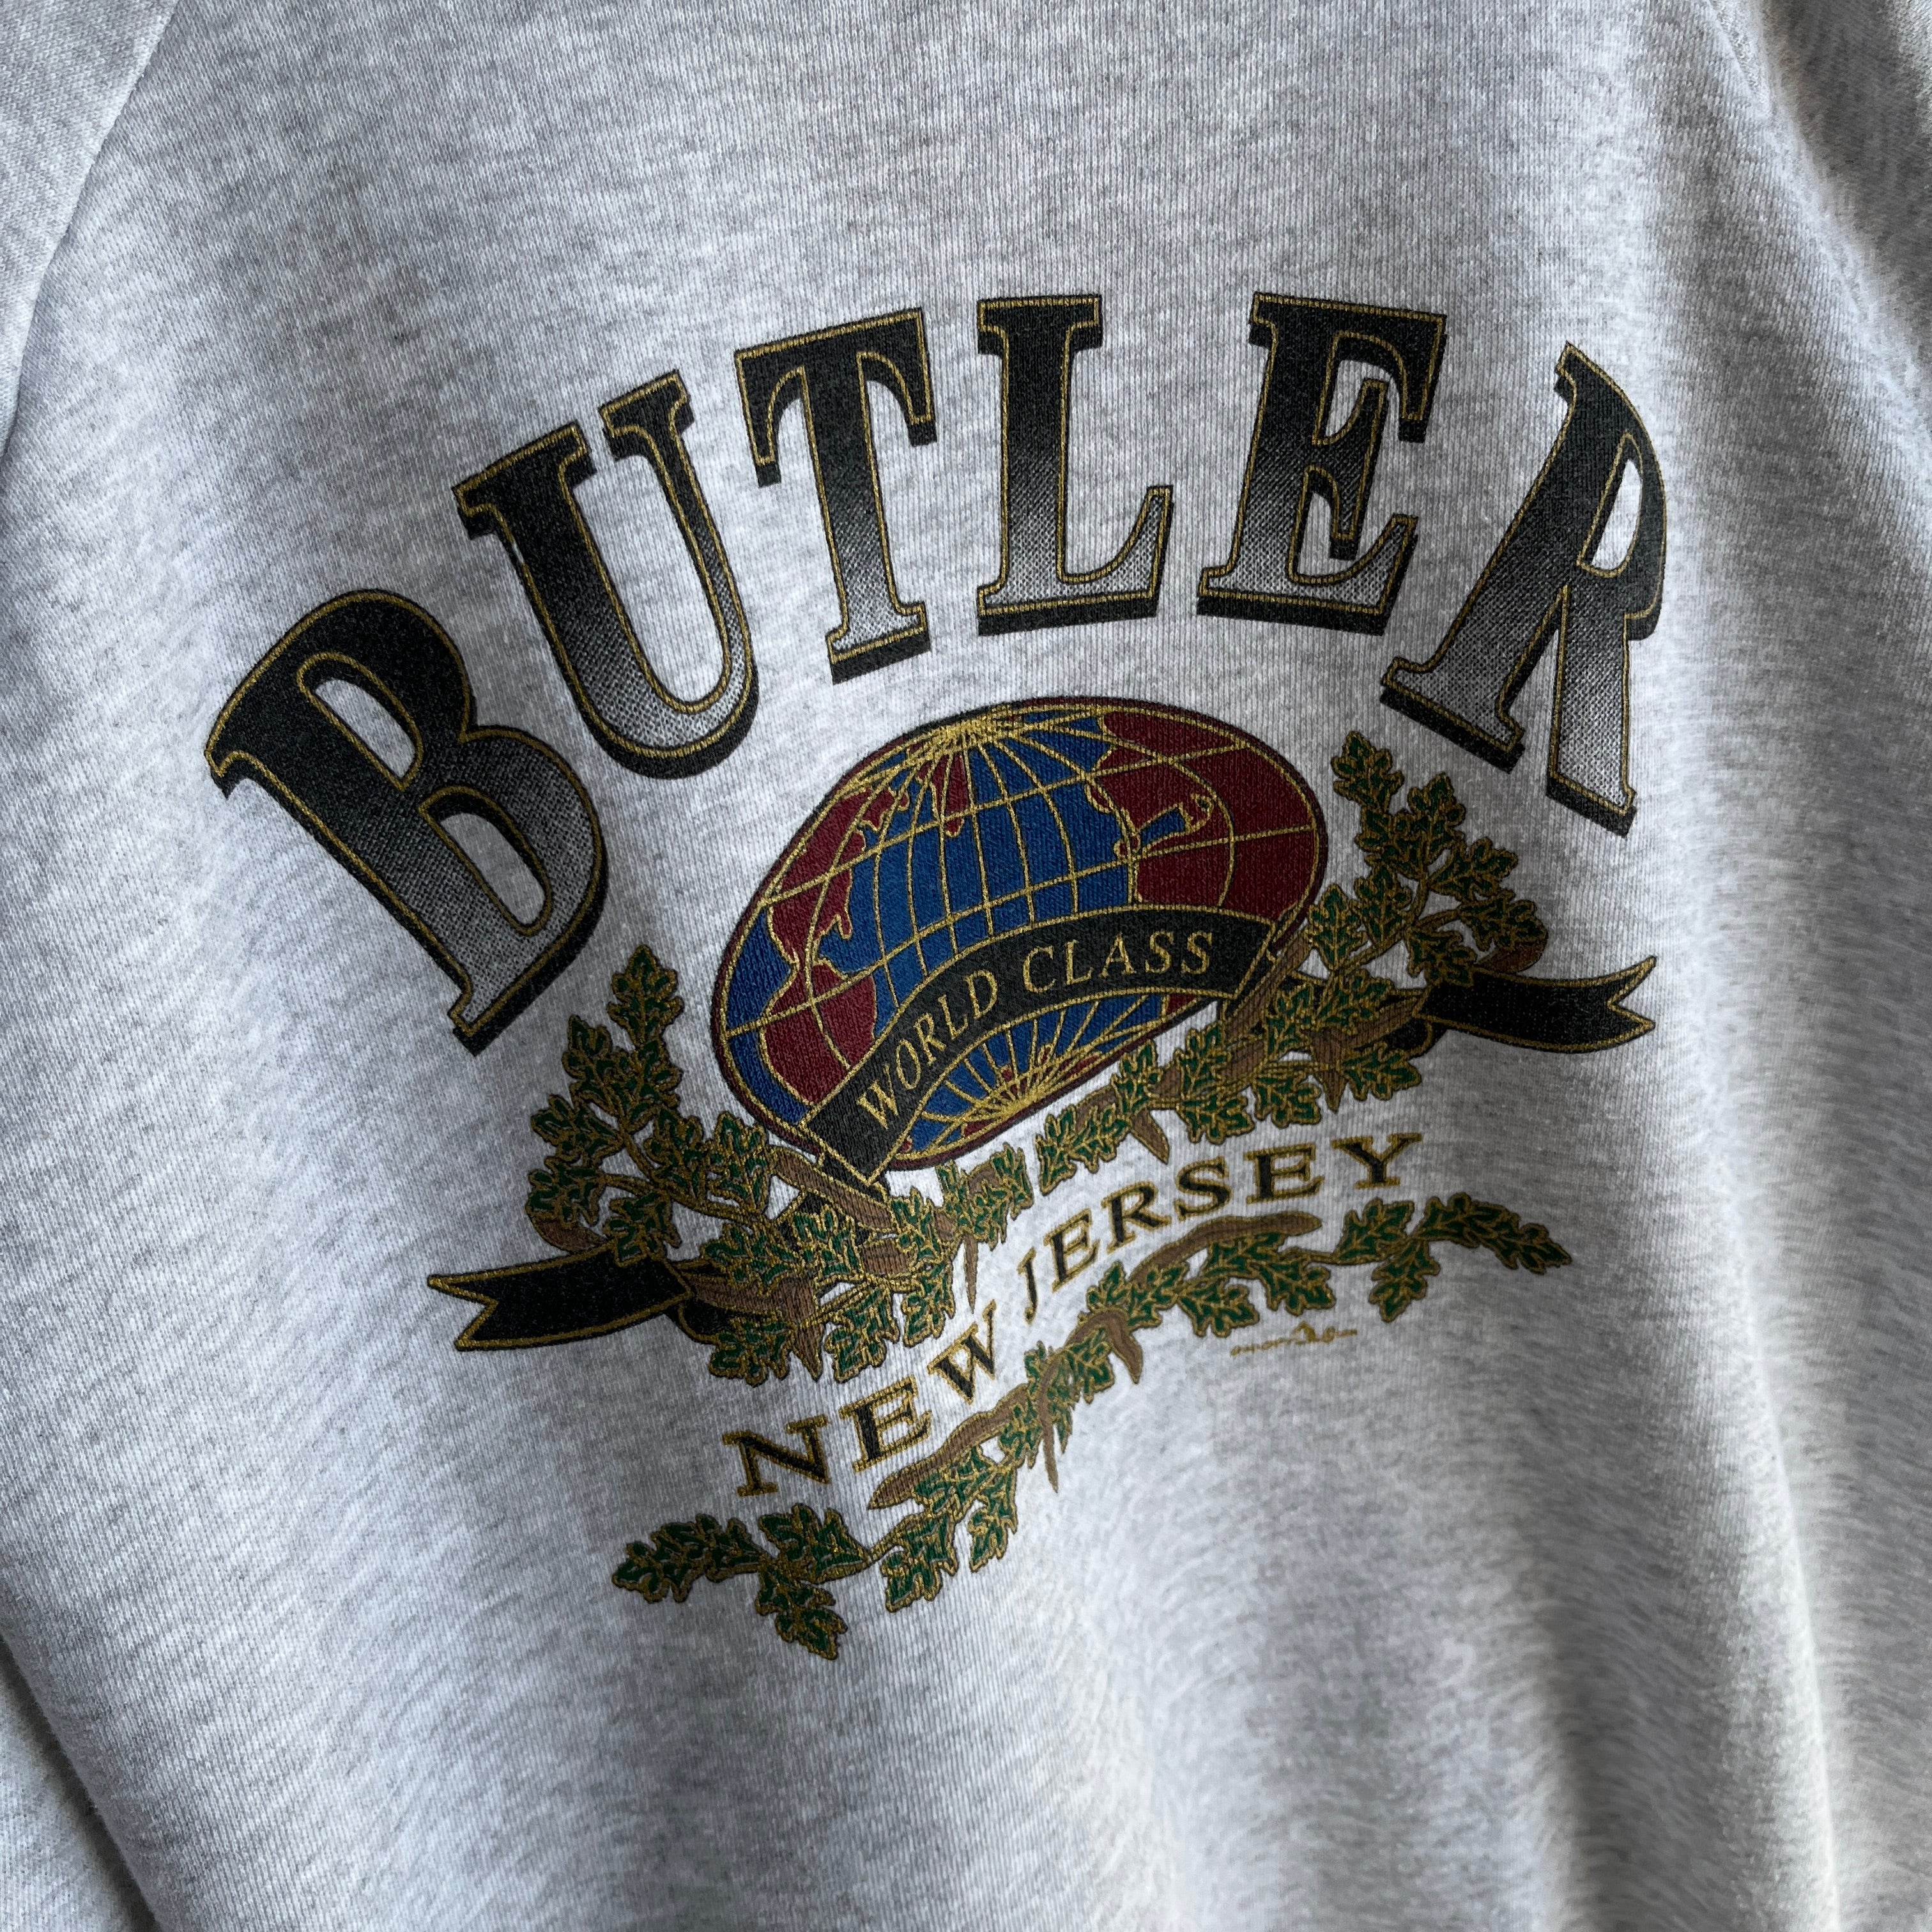 1990s Butler New Jersey - World Class - Sweatshirt